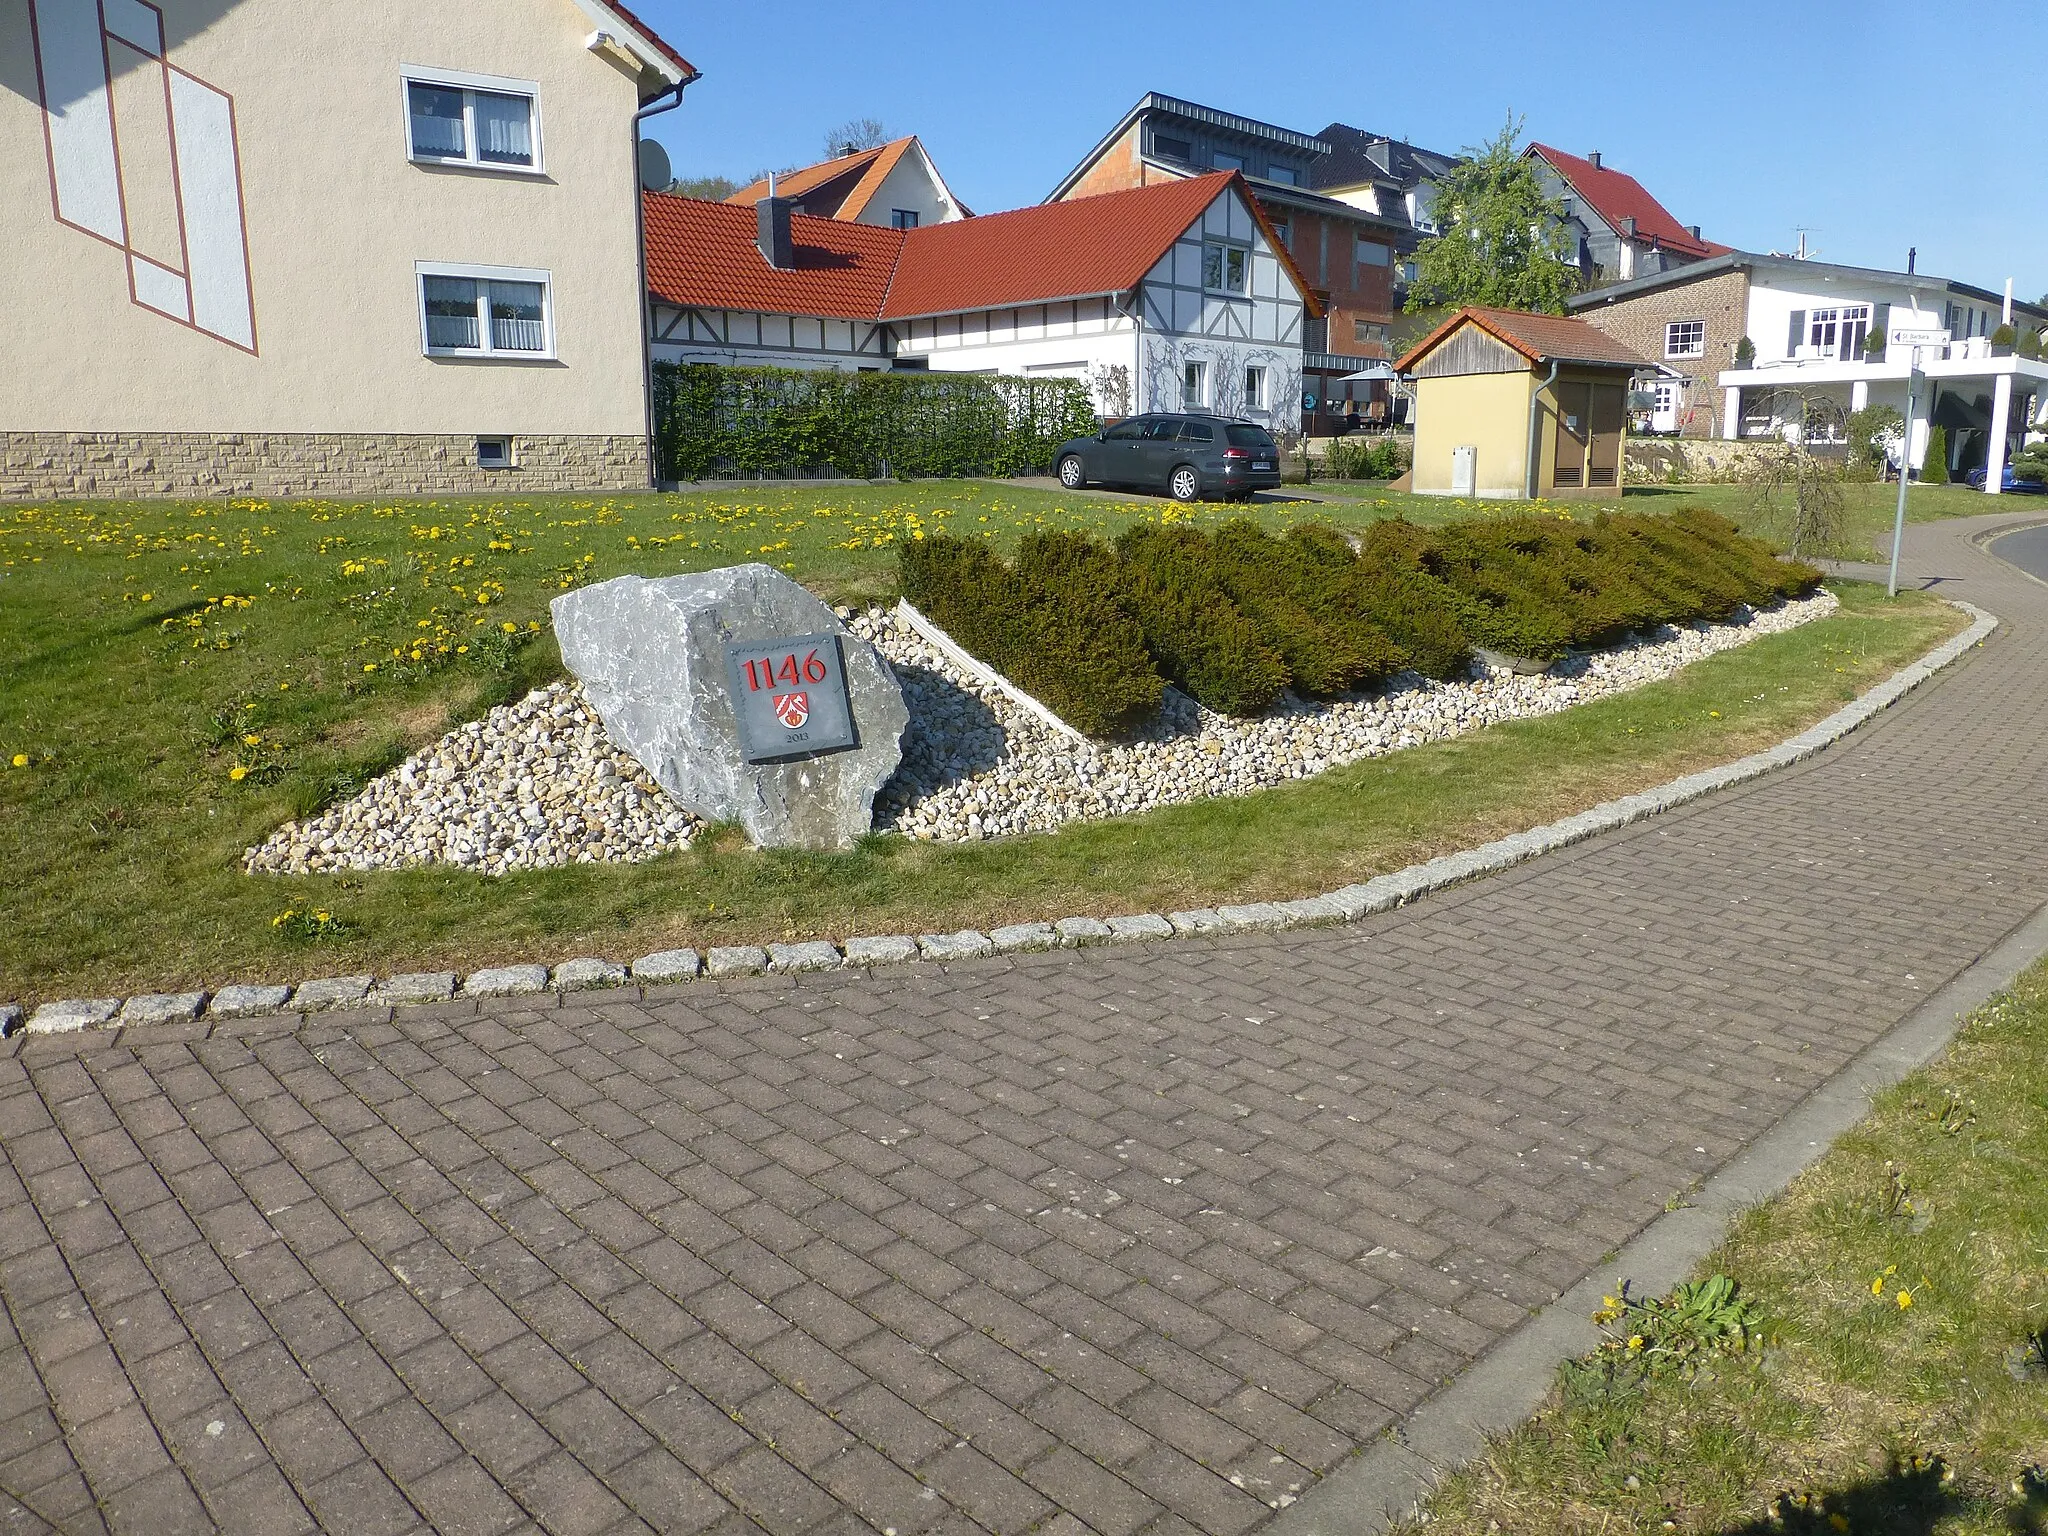 Photo showing: Stein mit Plakette zur Ersterwähnung 1146 und Hecke mit Schriftzug "Wingerode"